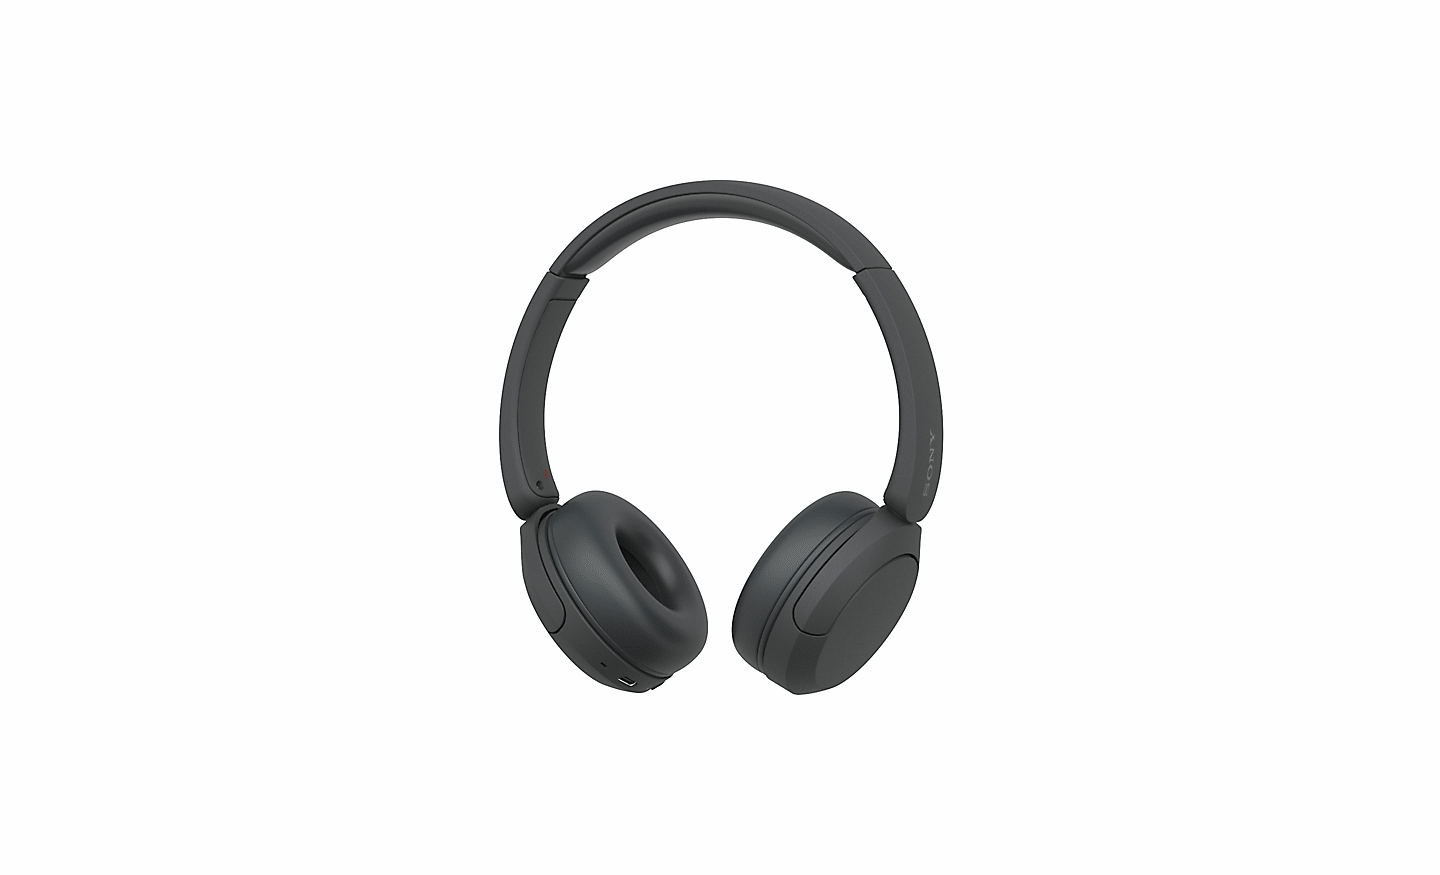 Kép: fekete színű Sony WH-CH520 fejhallgató, fehér háttérrel